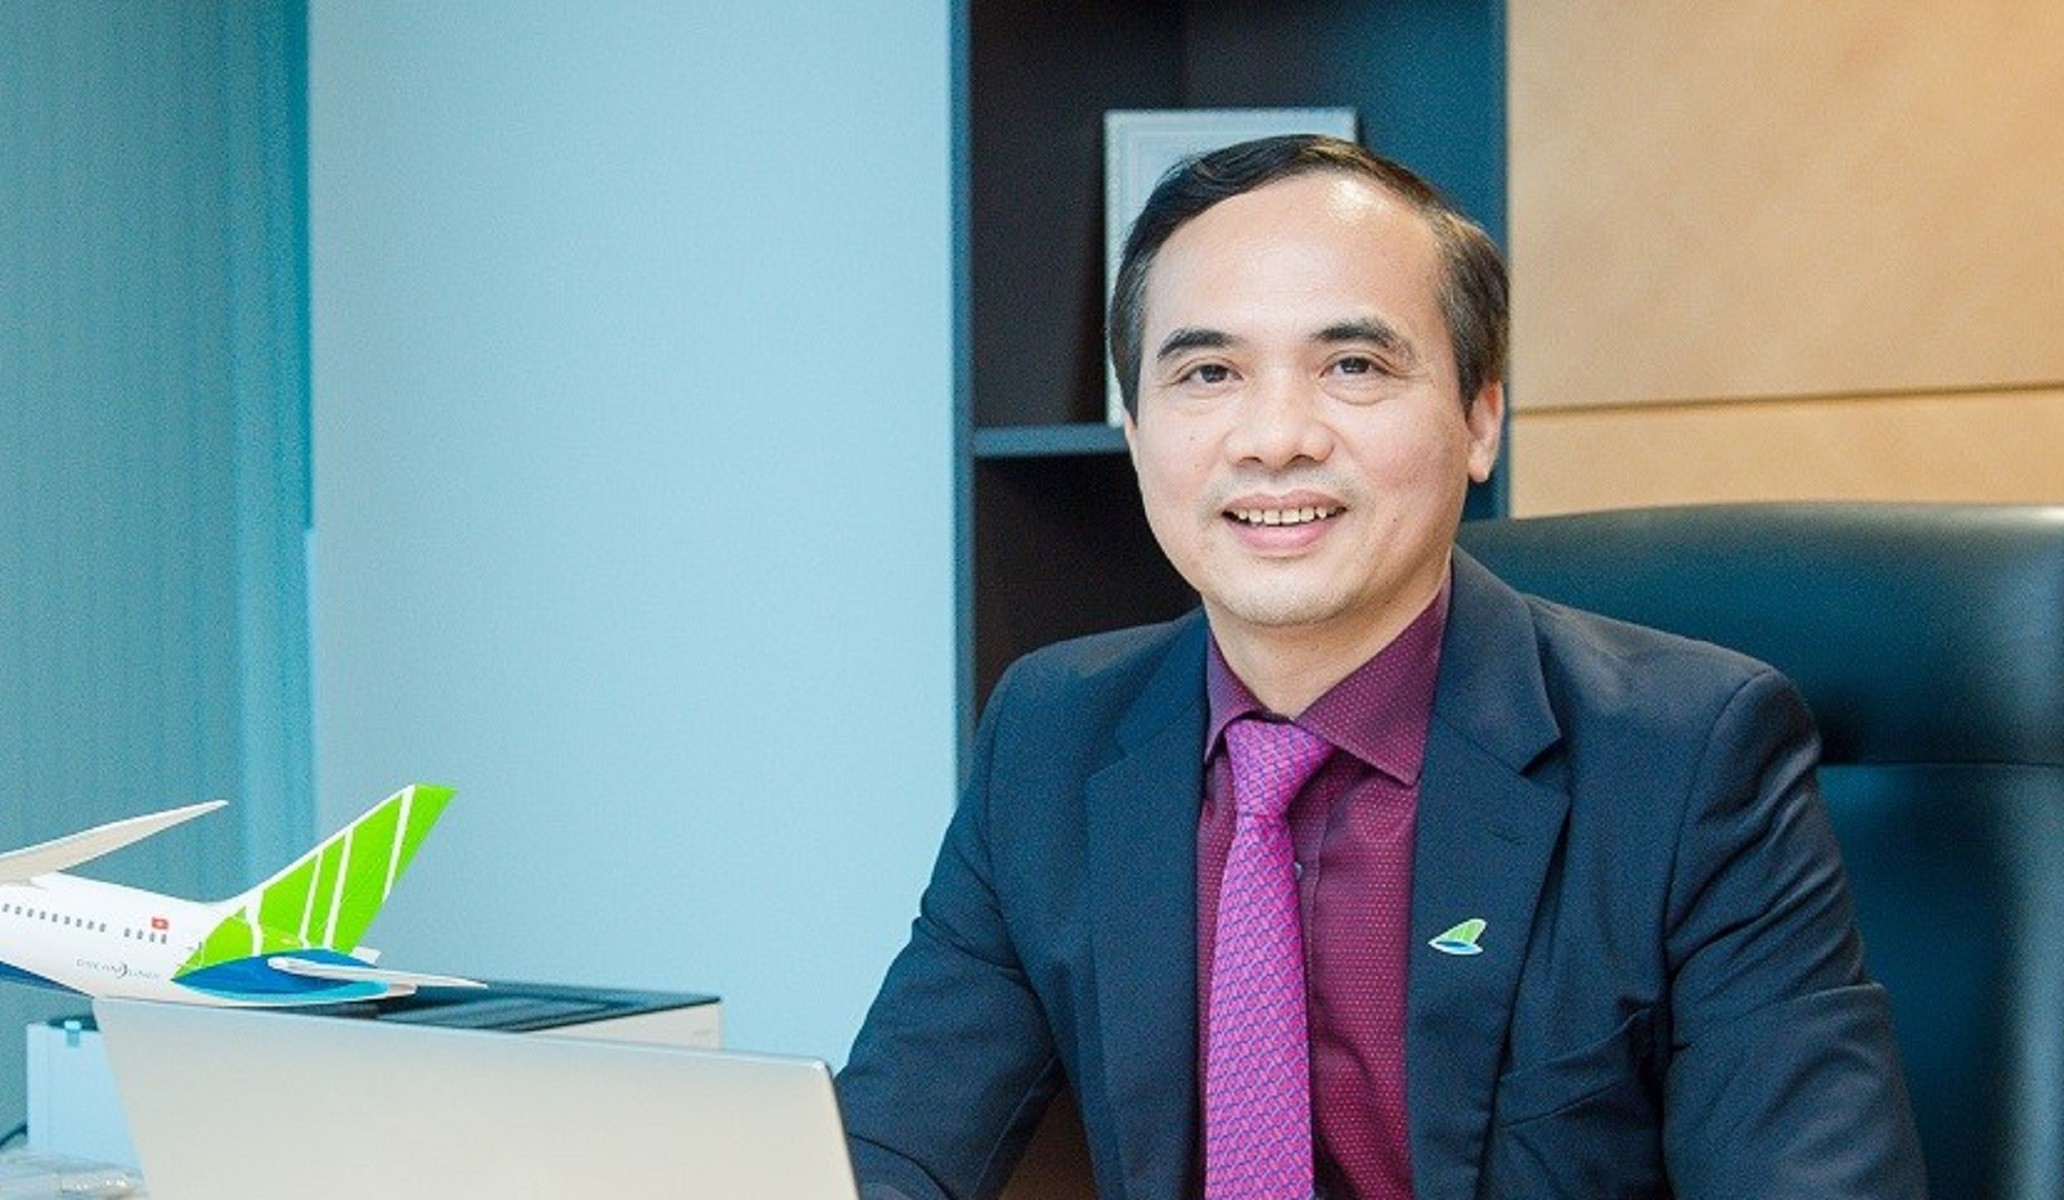 
Tân CEO mới của Công ty cổ phần Hàng không Tre Việt (Bamboo Airways) là ông Nguyễn Mạnh Quân - tiến sĩ kinh tế của trường Đại học Giao thông vận tải đồng thời ông cũng tốt nghiệp cao cấp lý luận chính trị của Học viện Chính trị - Hành chính quốc gia TP. Hồ Chí Minh
